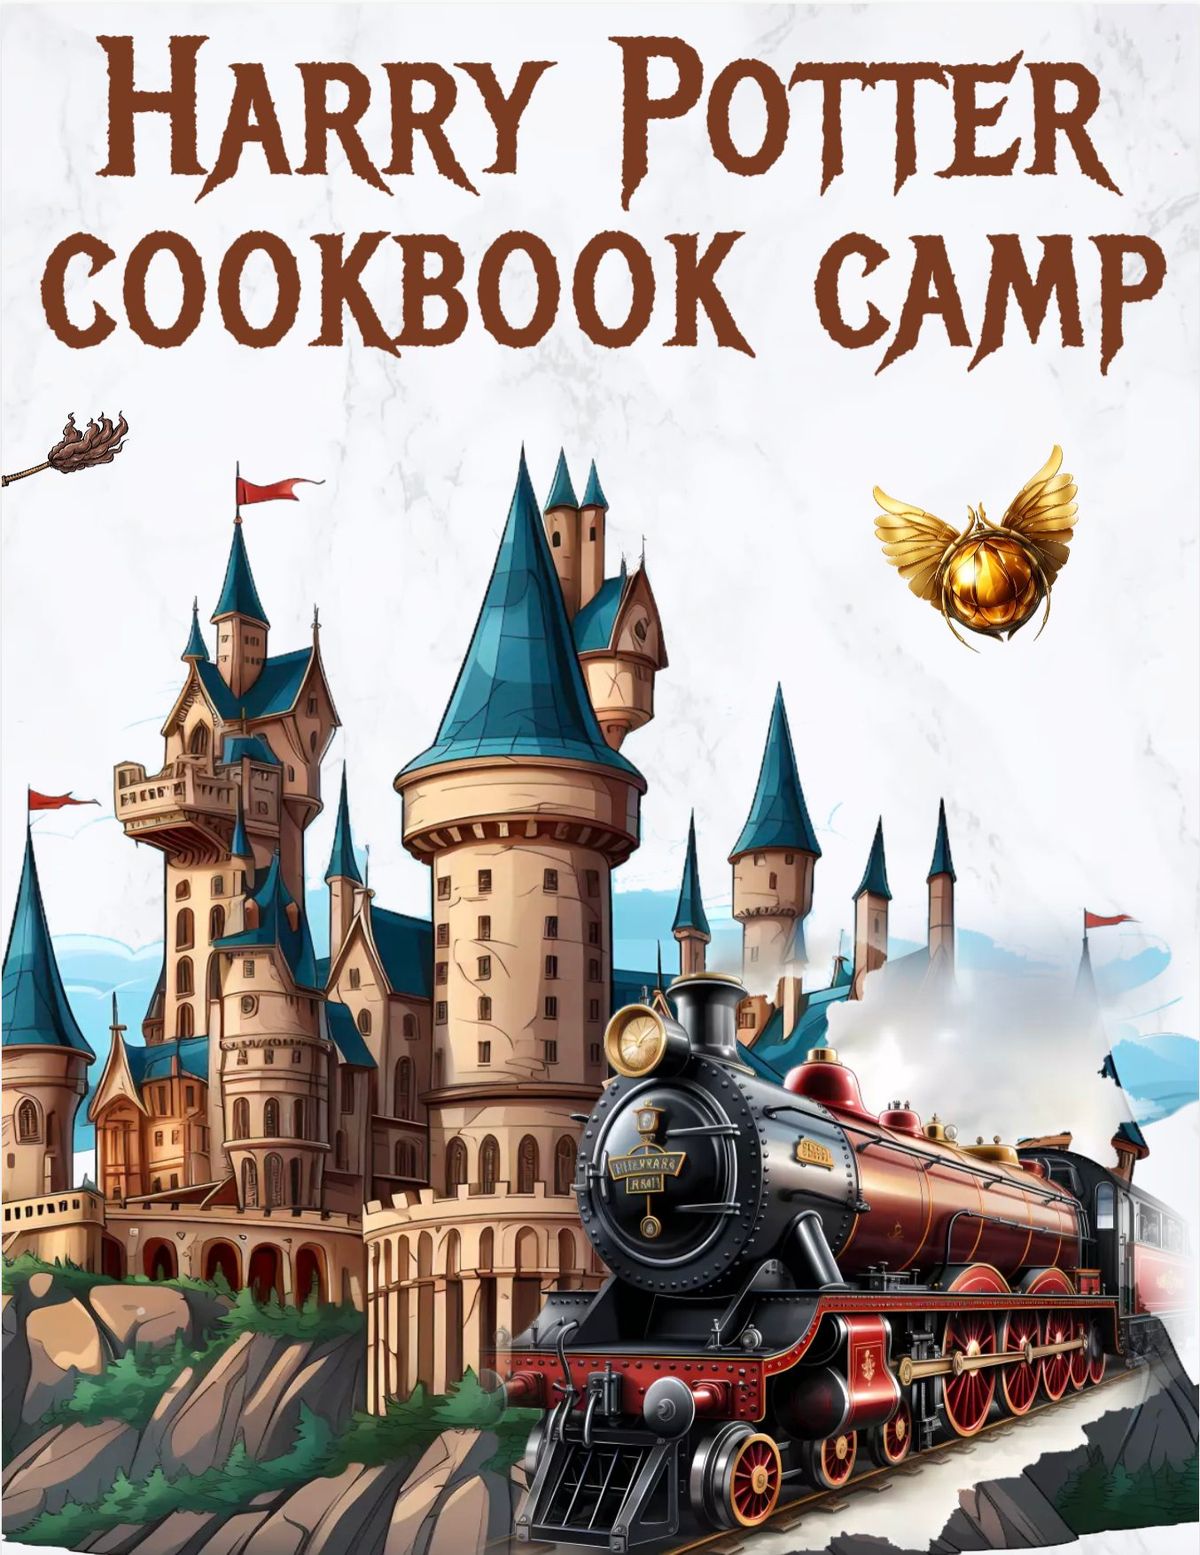 Summer Camp Harry Potter Cookbook Camp